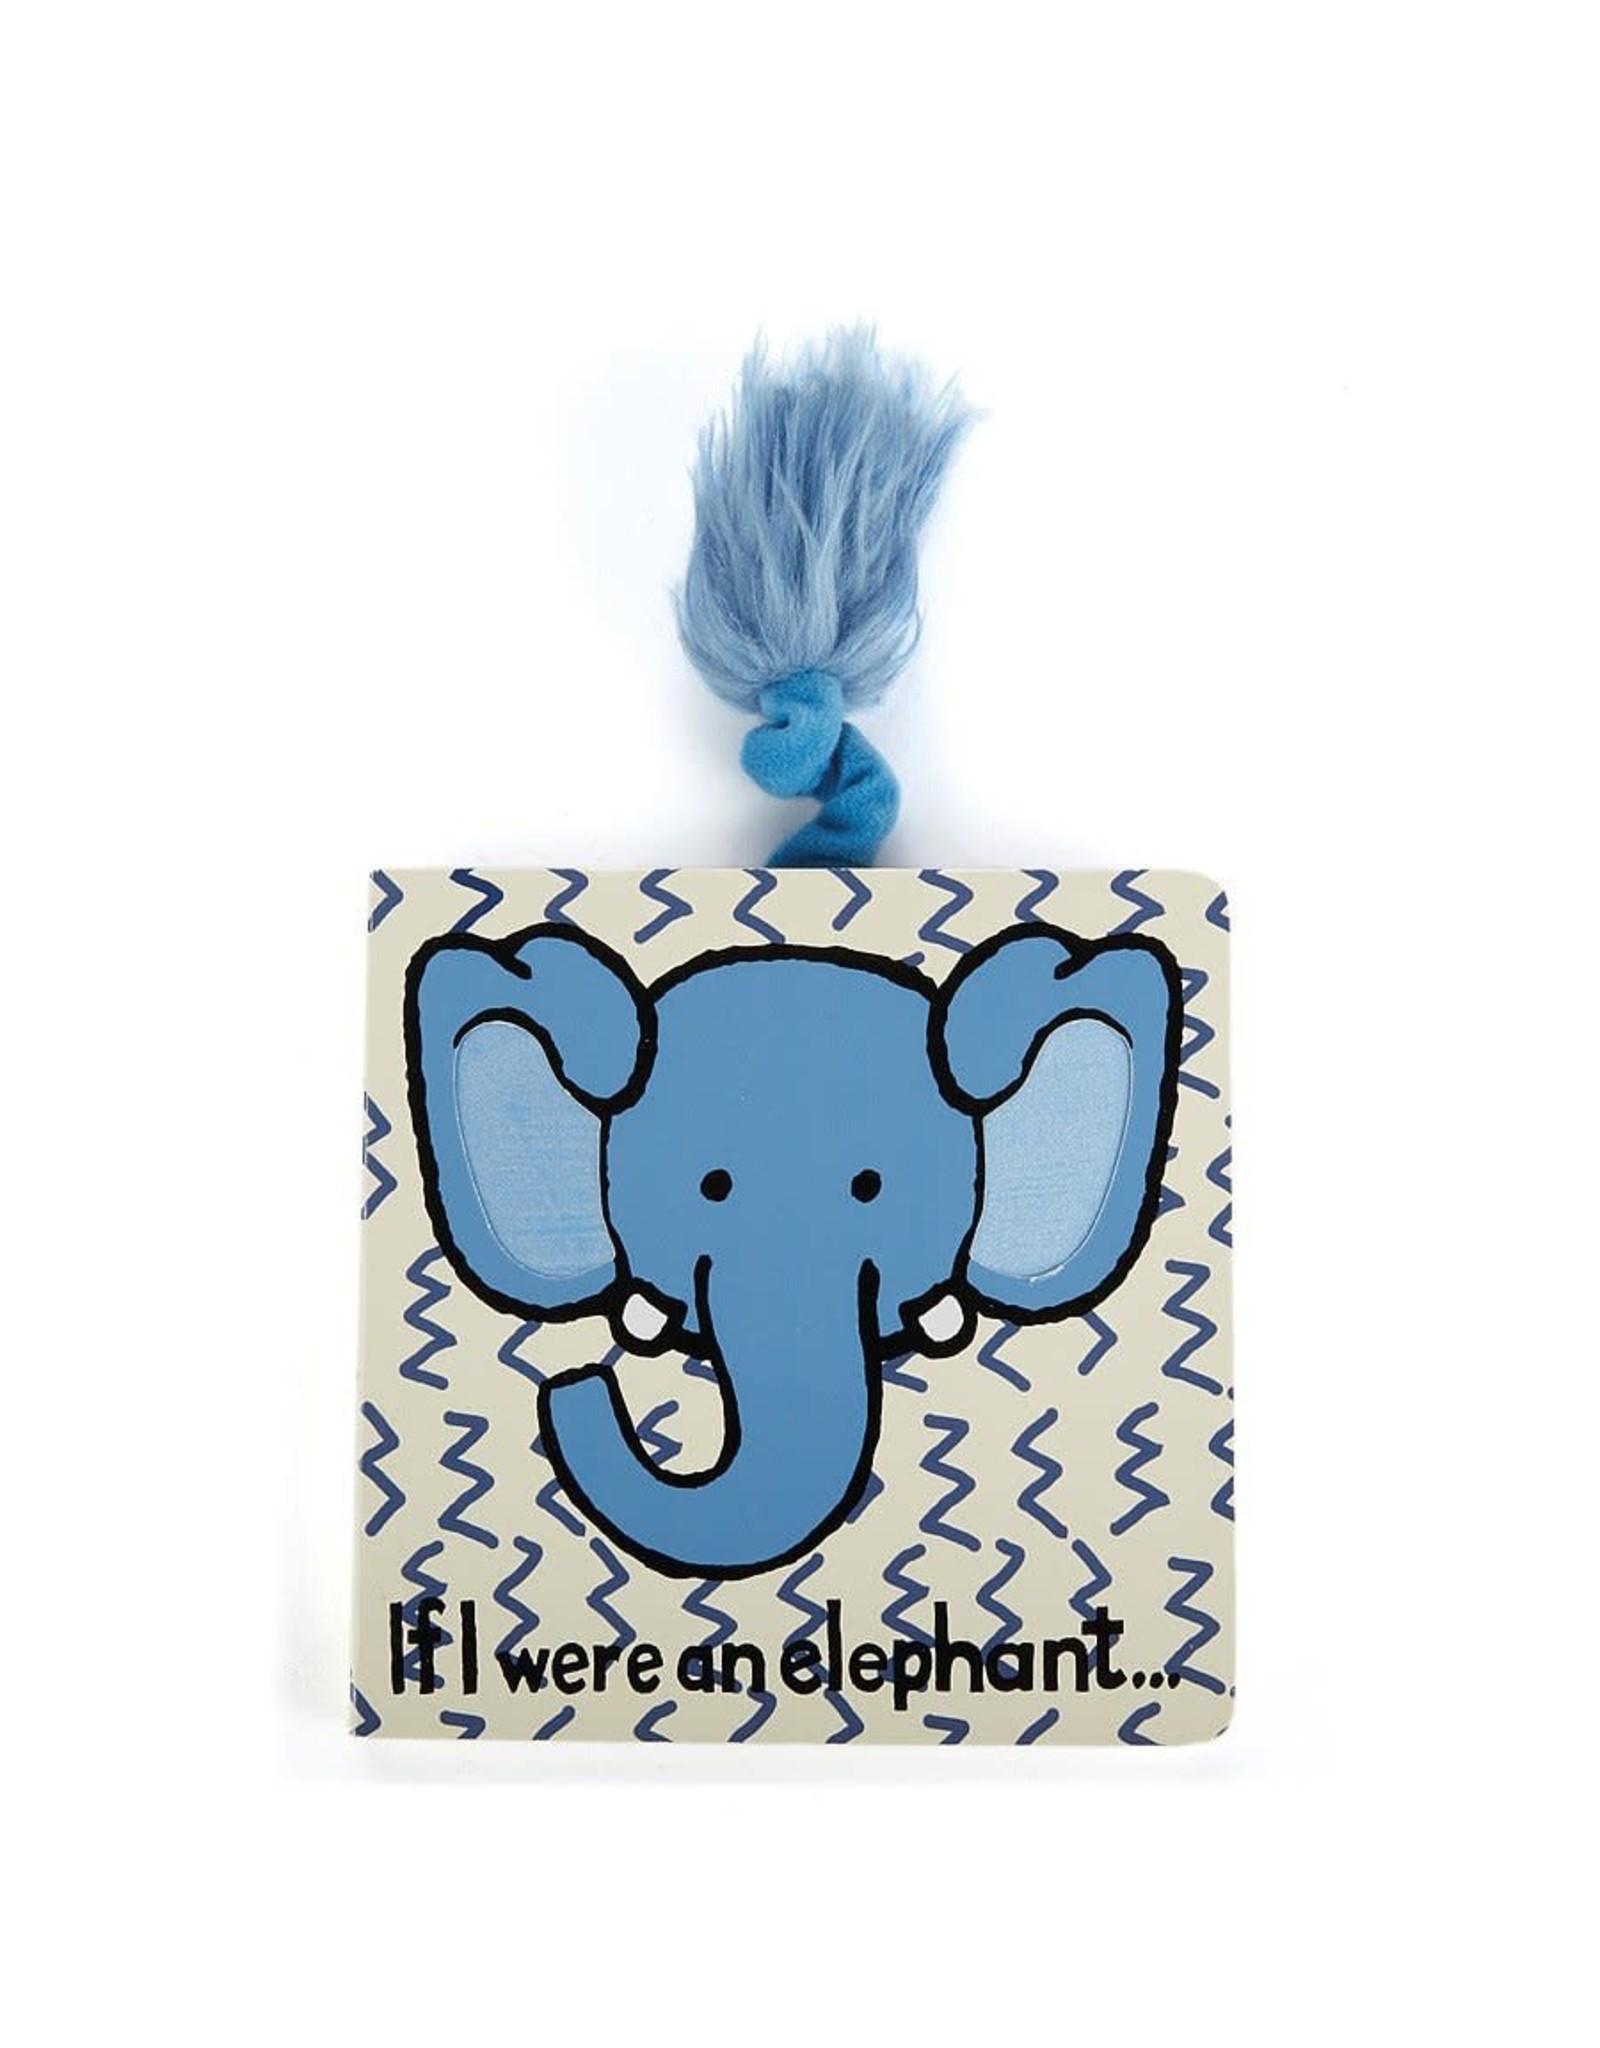 IF I WERE AN ELEPHANT